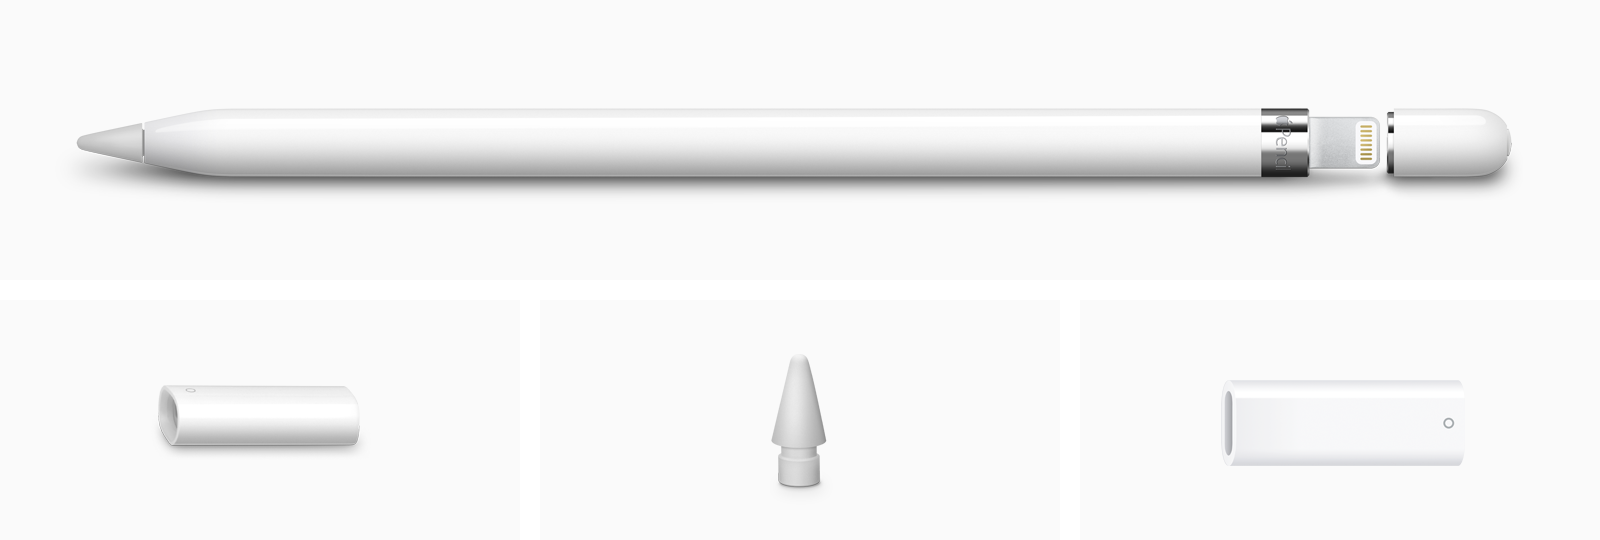 Pencil: over Apple's (stylus) voor de iPad